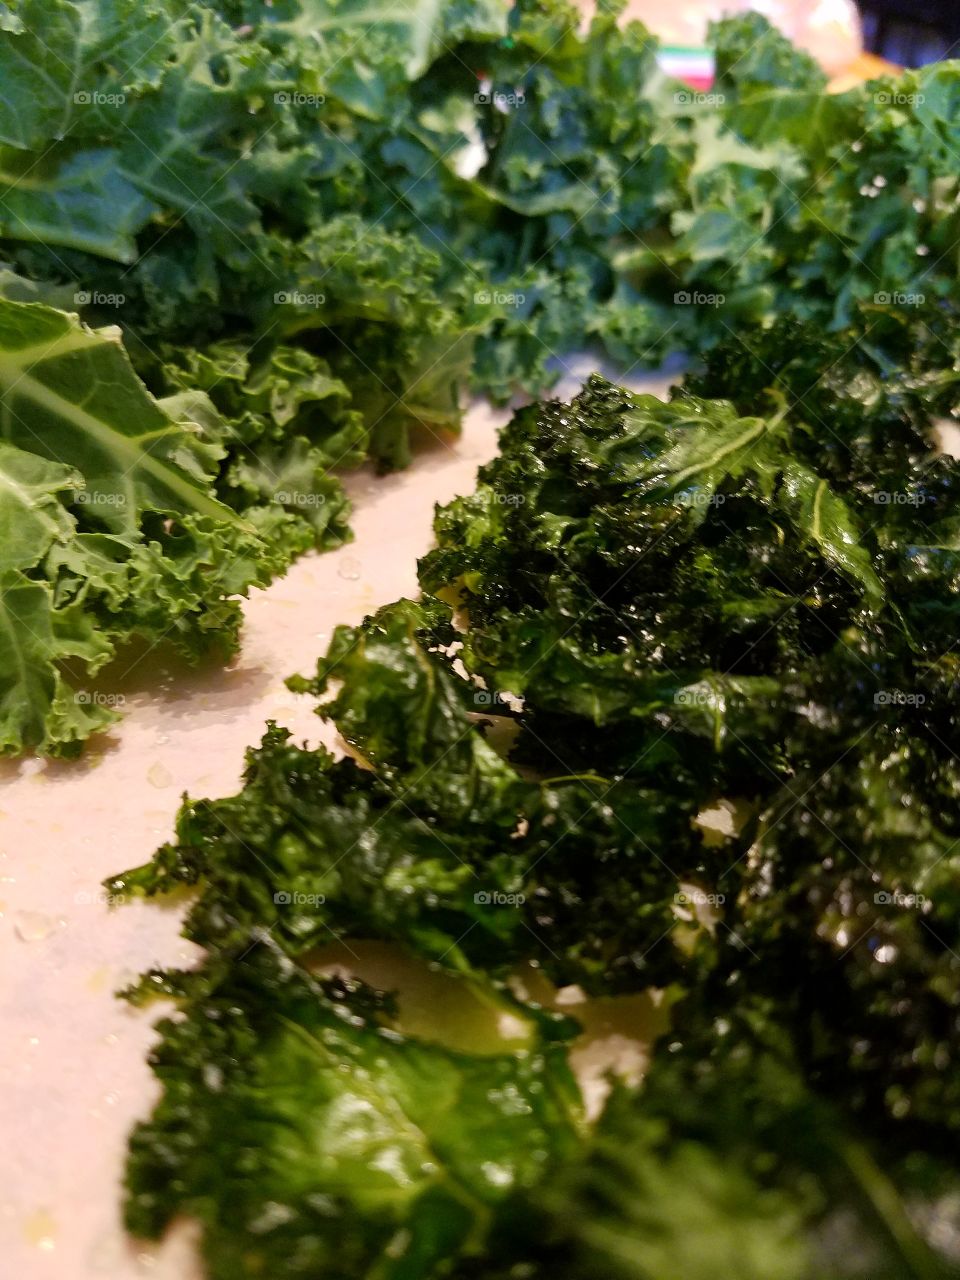 fresh raw kale alongside kale crispy chips, healthy diet.